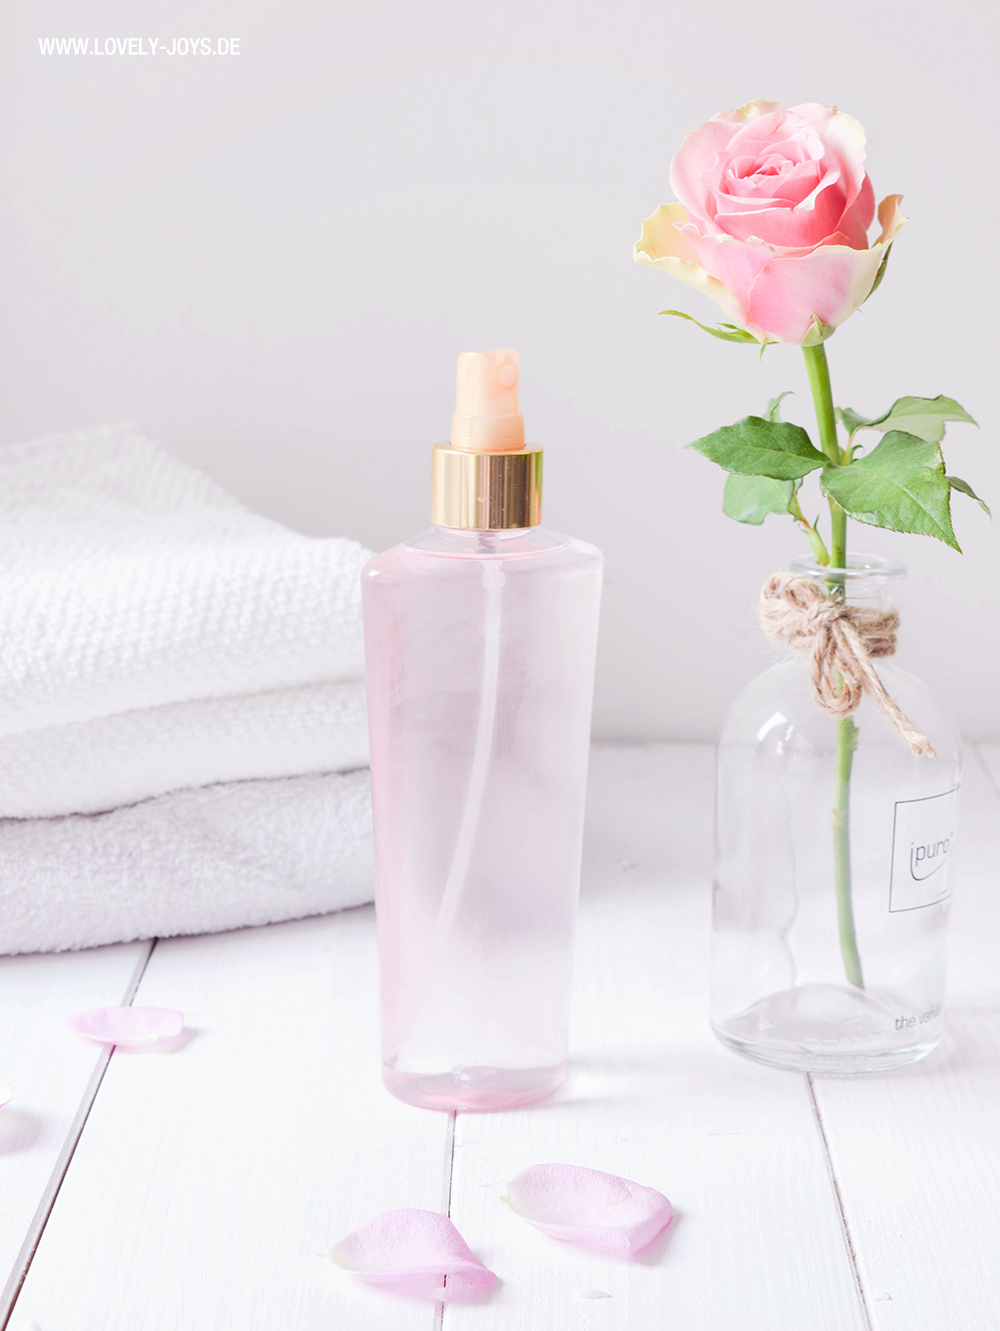 Rosenwasser Gesundheit und Hautpflege Body Spray selber herstellen